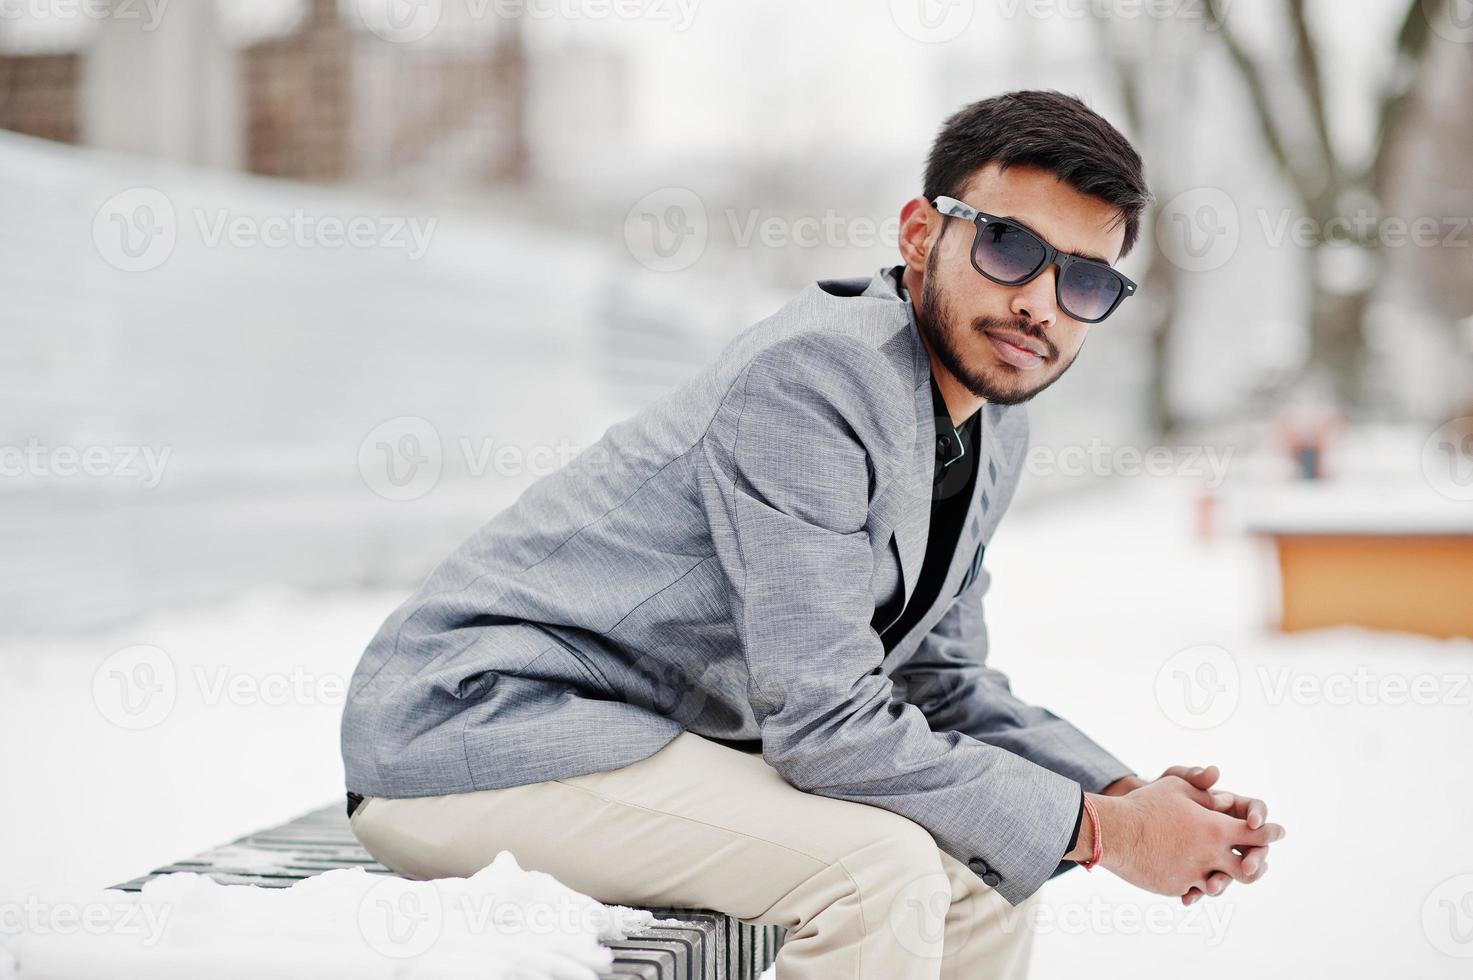 jeune homme indien décontracté en veste argentée et lunettes de soleil posées le jour de l'hiver et assis sur un banc. photo